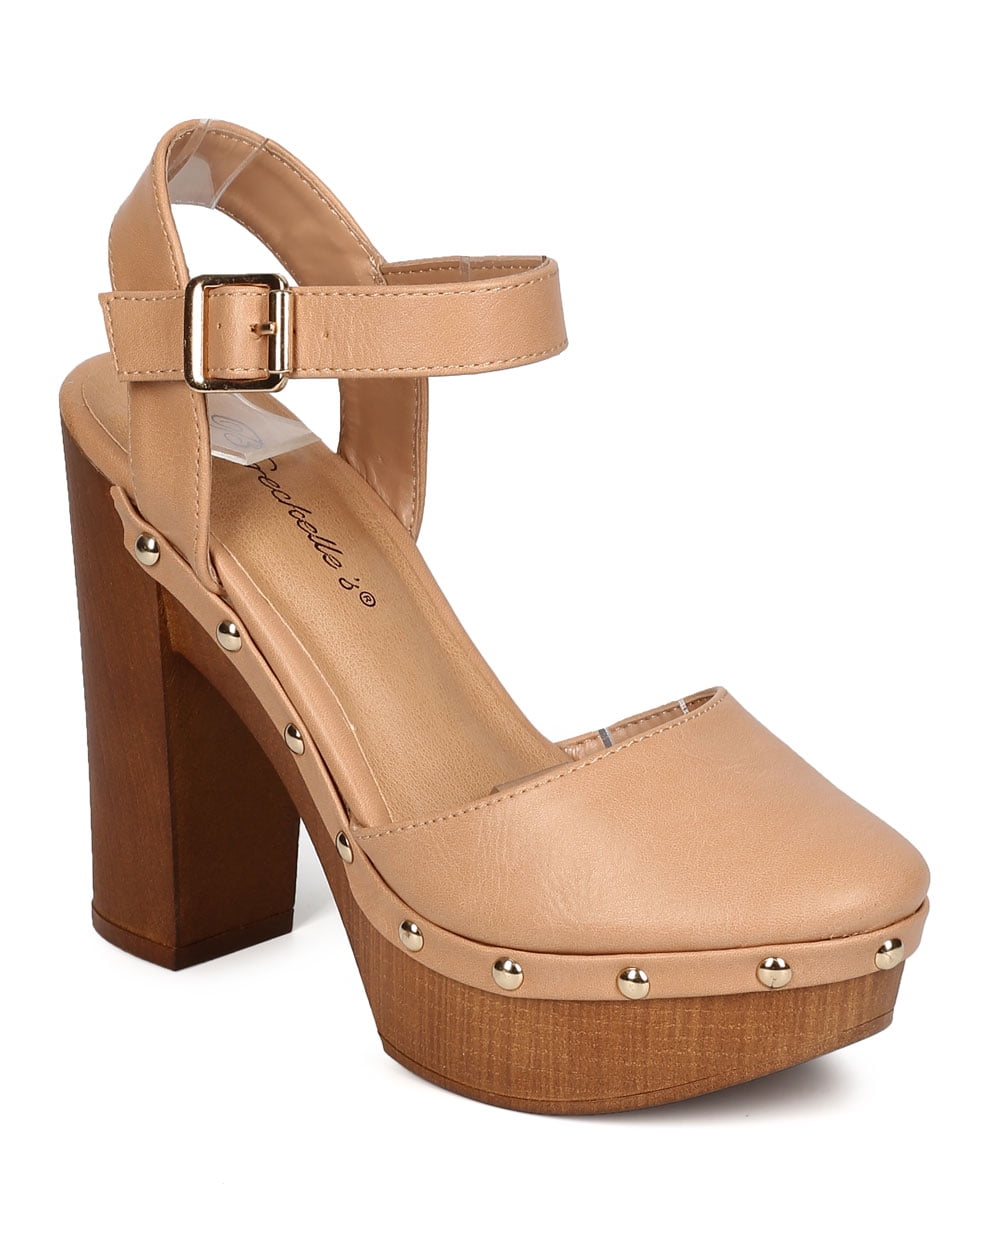 wooden heel clogs